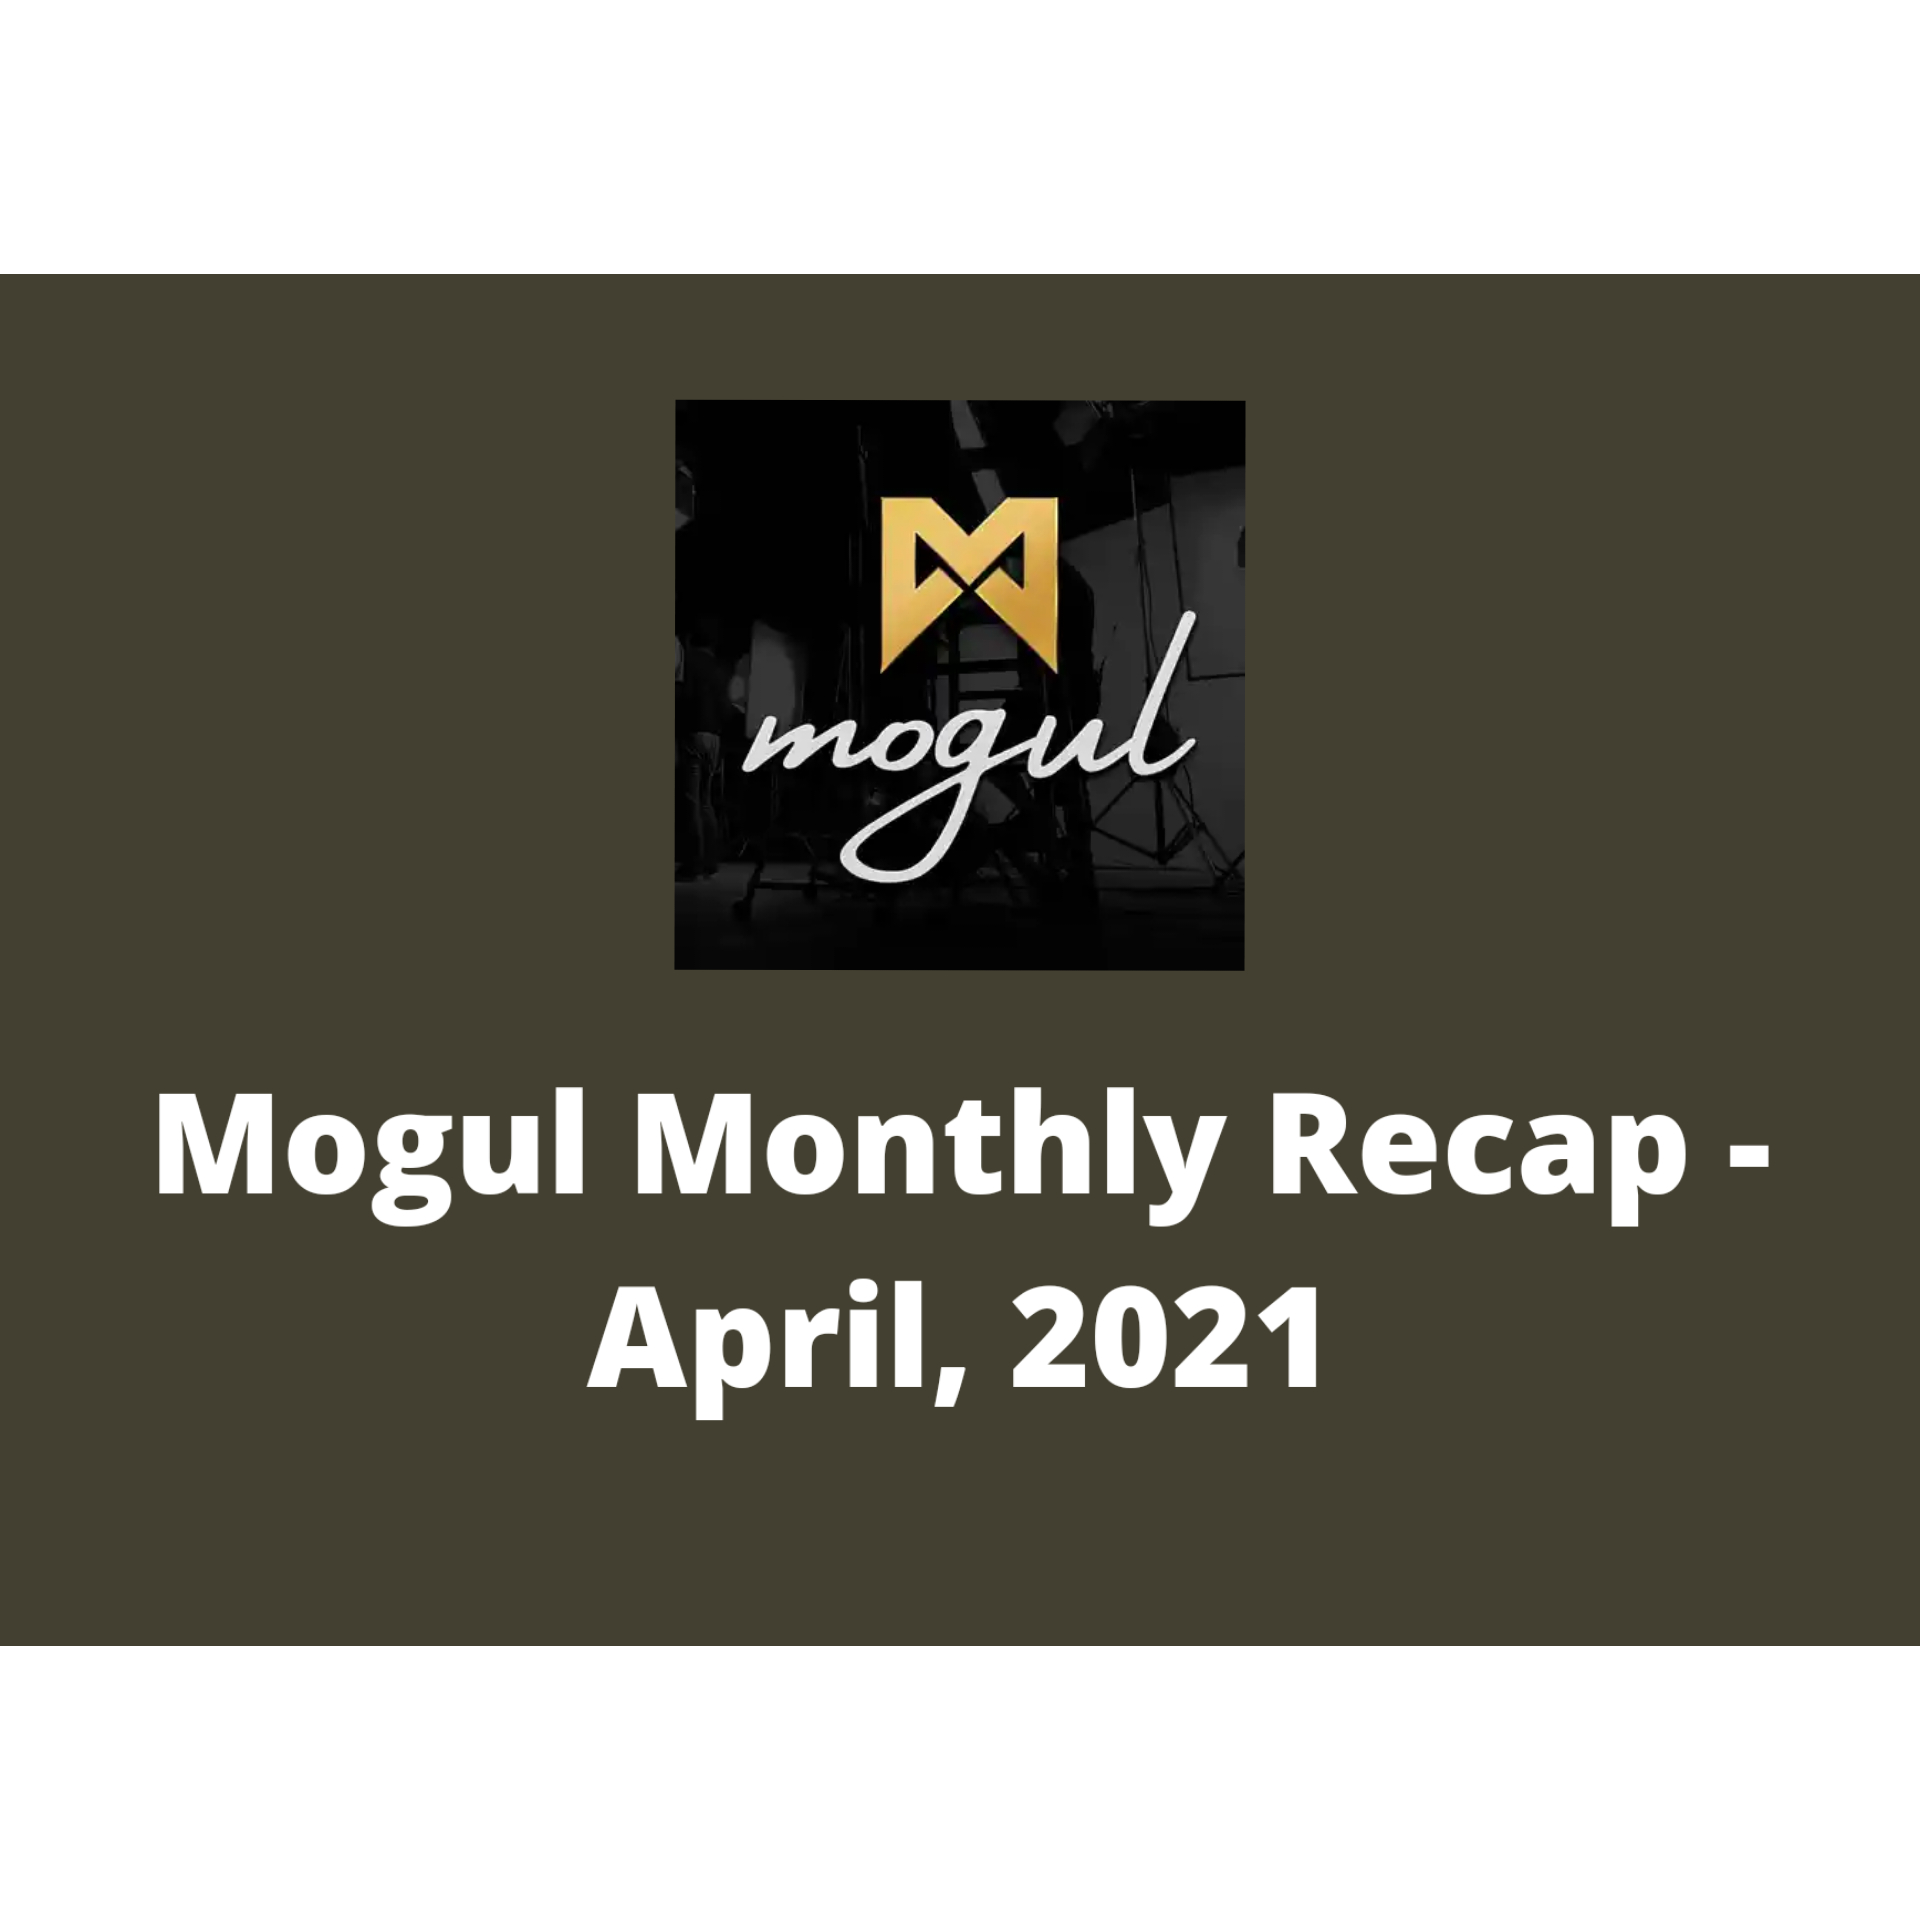 @diana01/mogul-monthly-recap-april-2021